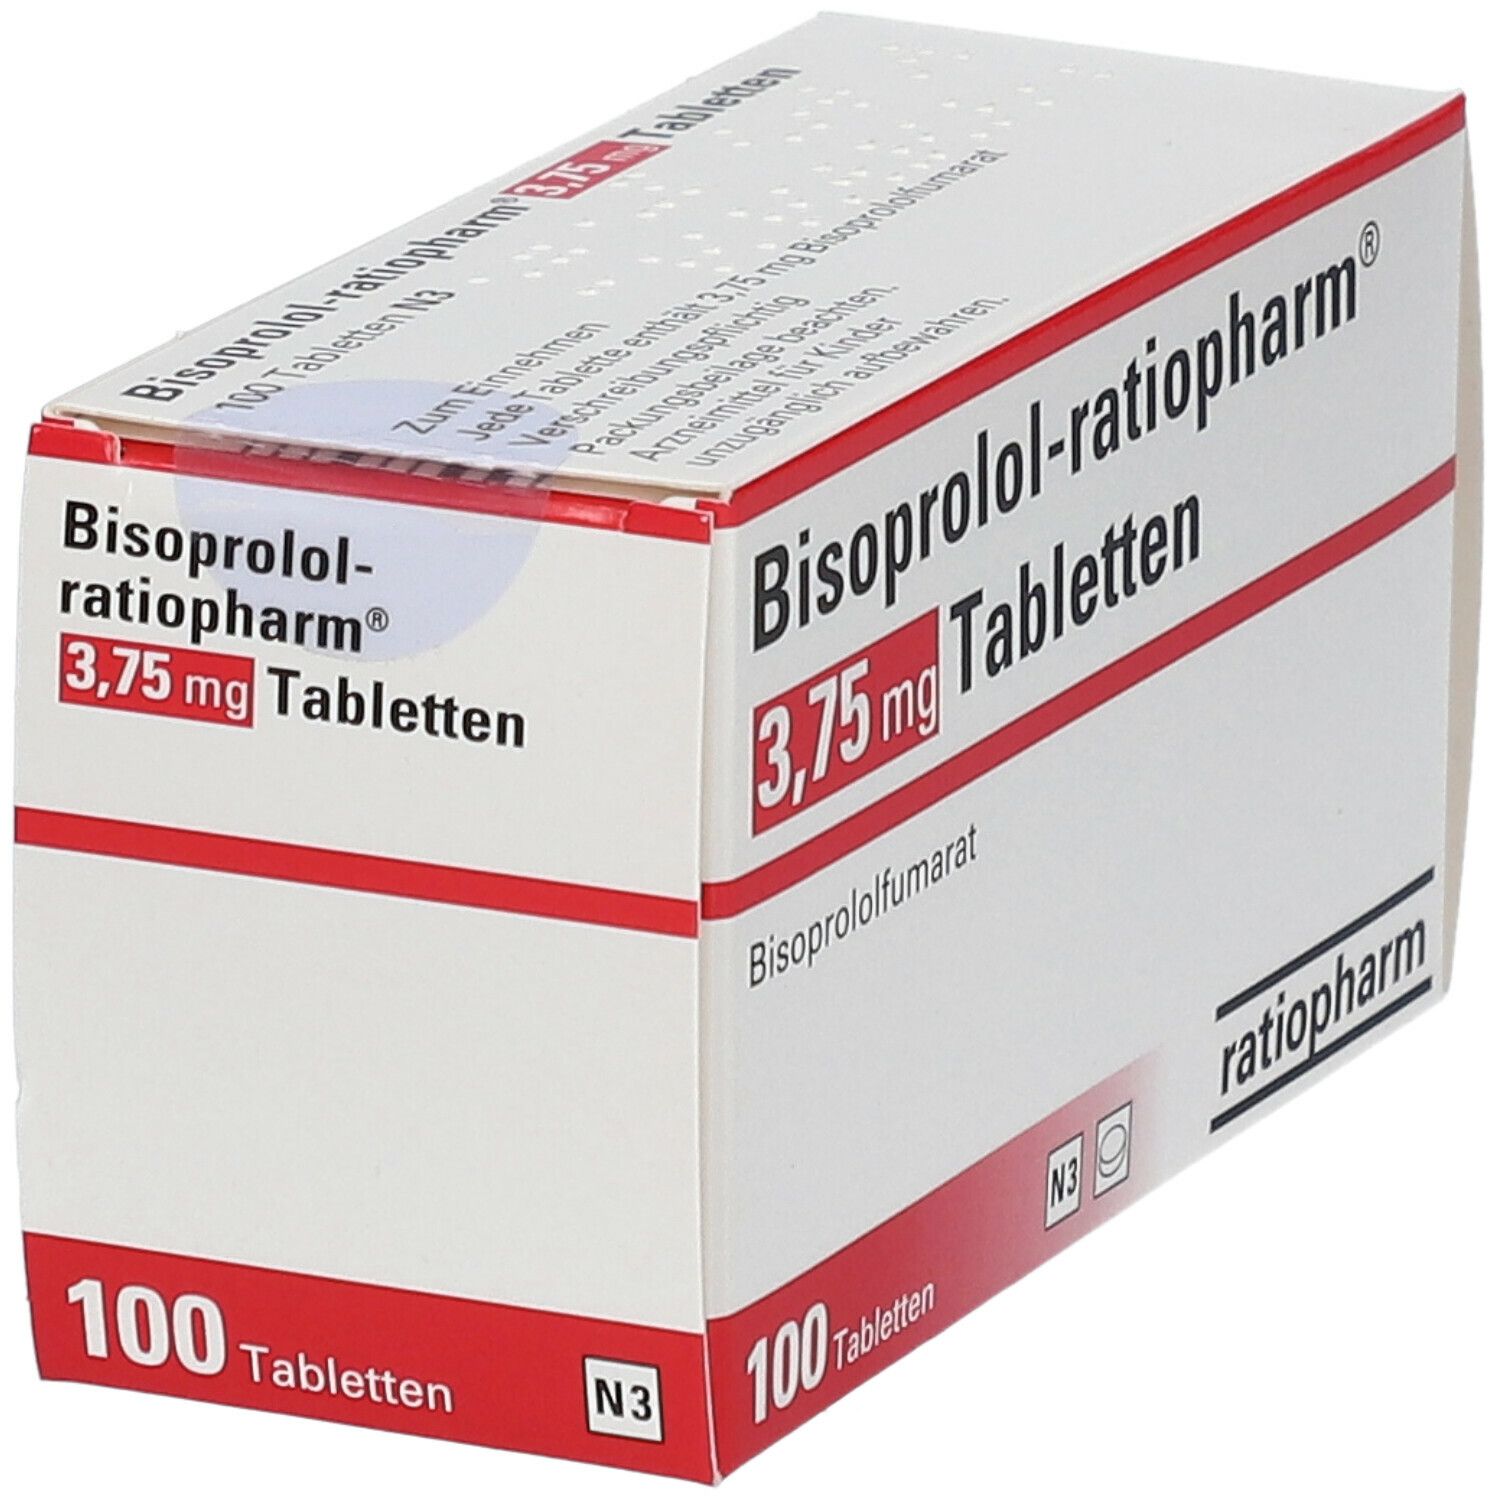 Bisoprolol-ratiopharm® 3,75 mg